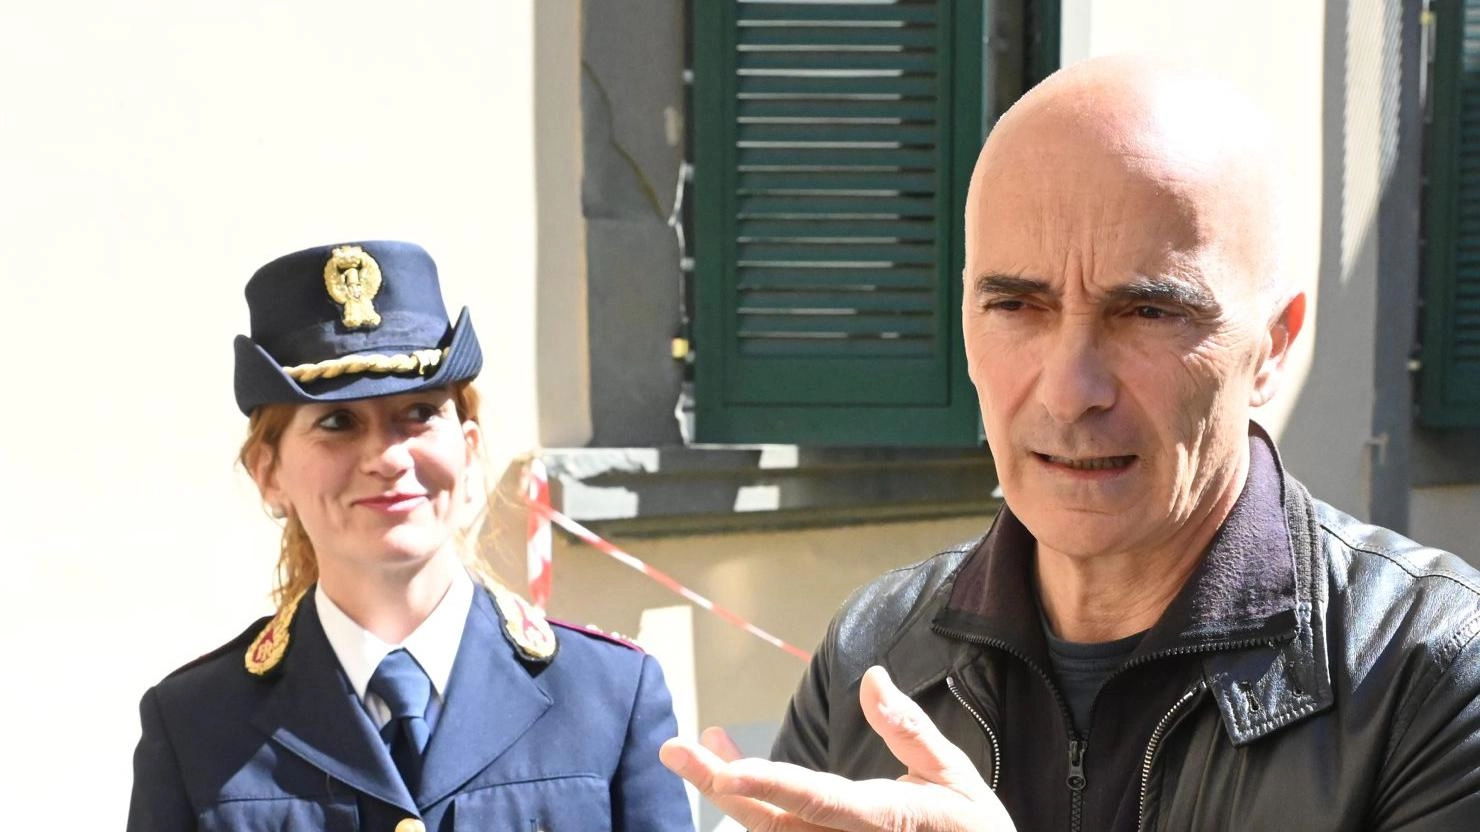 Il questore Giobbi torna a chiedere una soluzione: “Pronti anche a trasferire il servizio fuori Lucca”